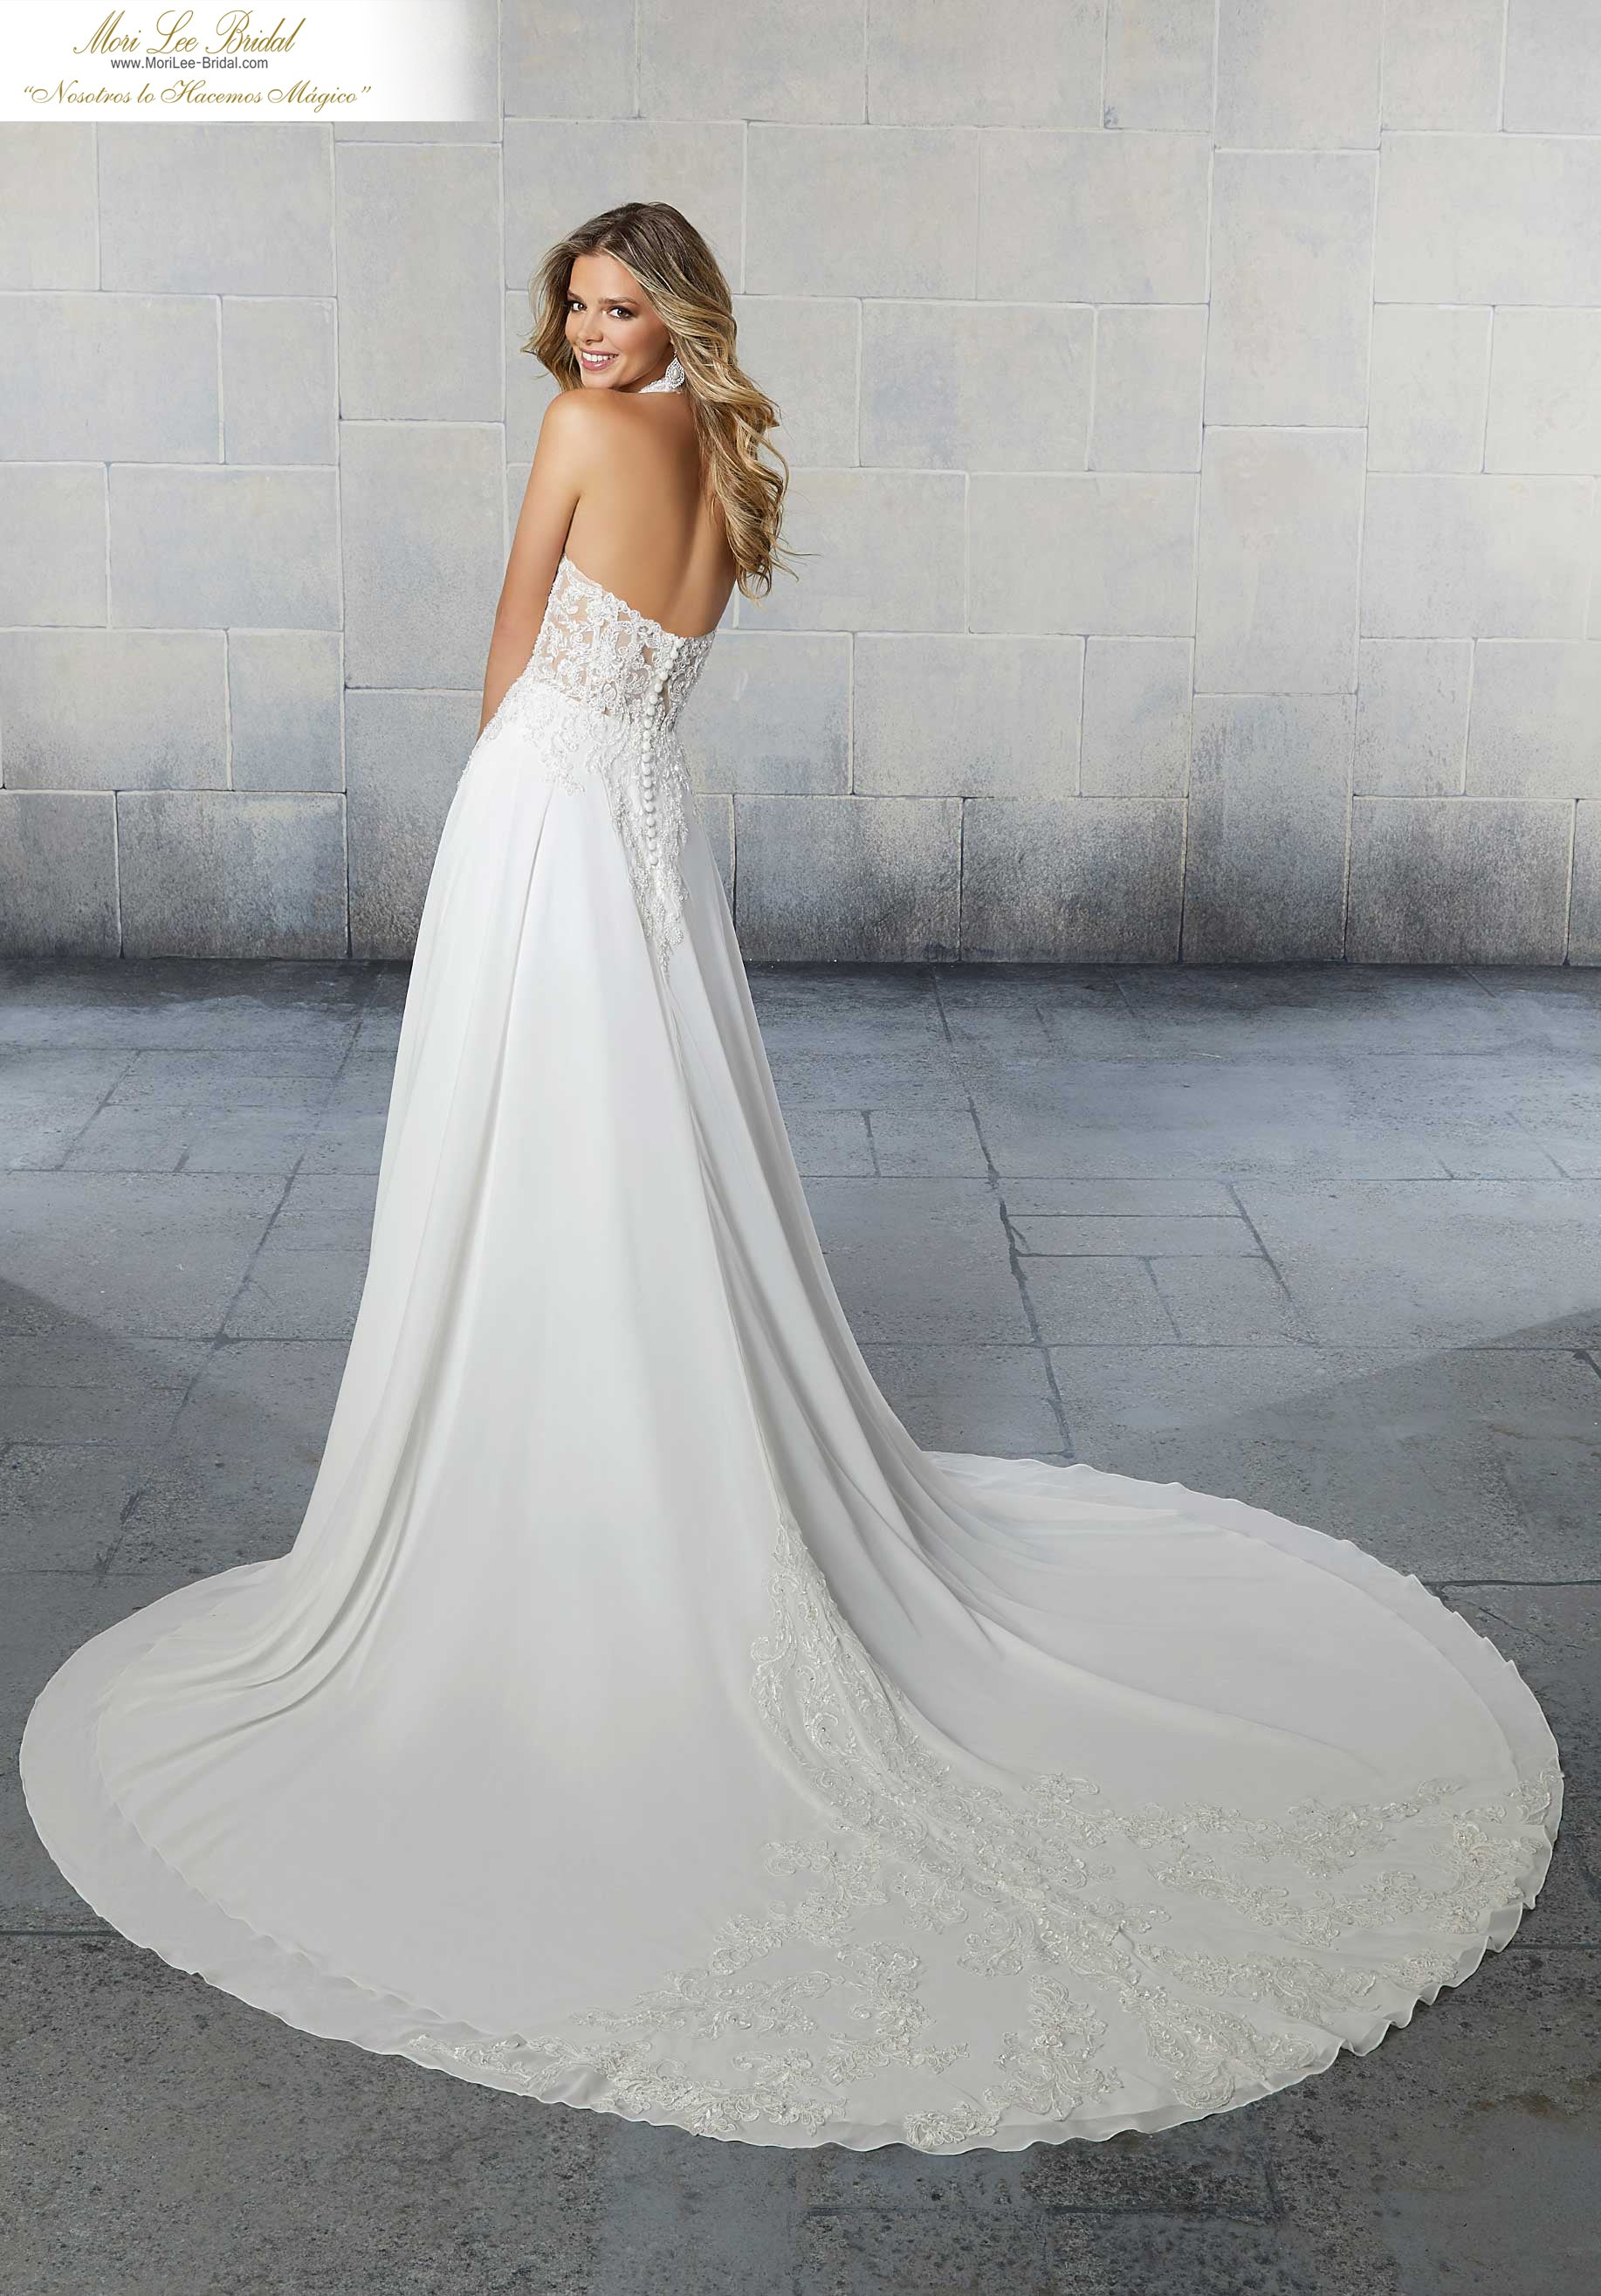 Vestido de novia Sierra presenta aplicaciones de encaje de alençon con cuentas de cristal en una falda de gasa de una línea A que fluye. FYOI*